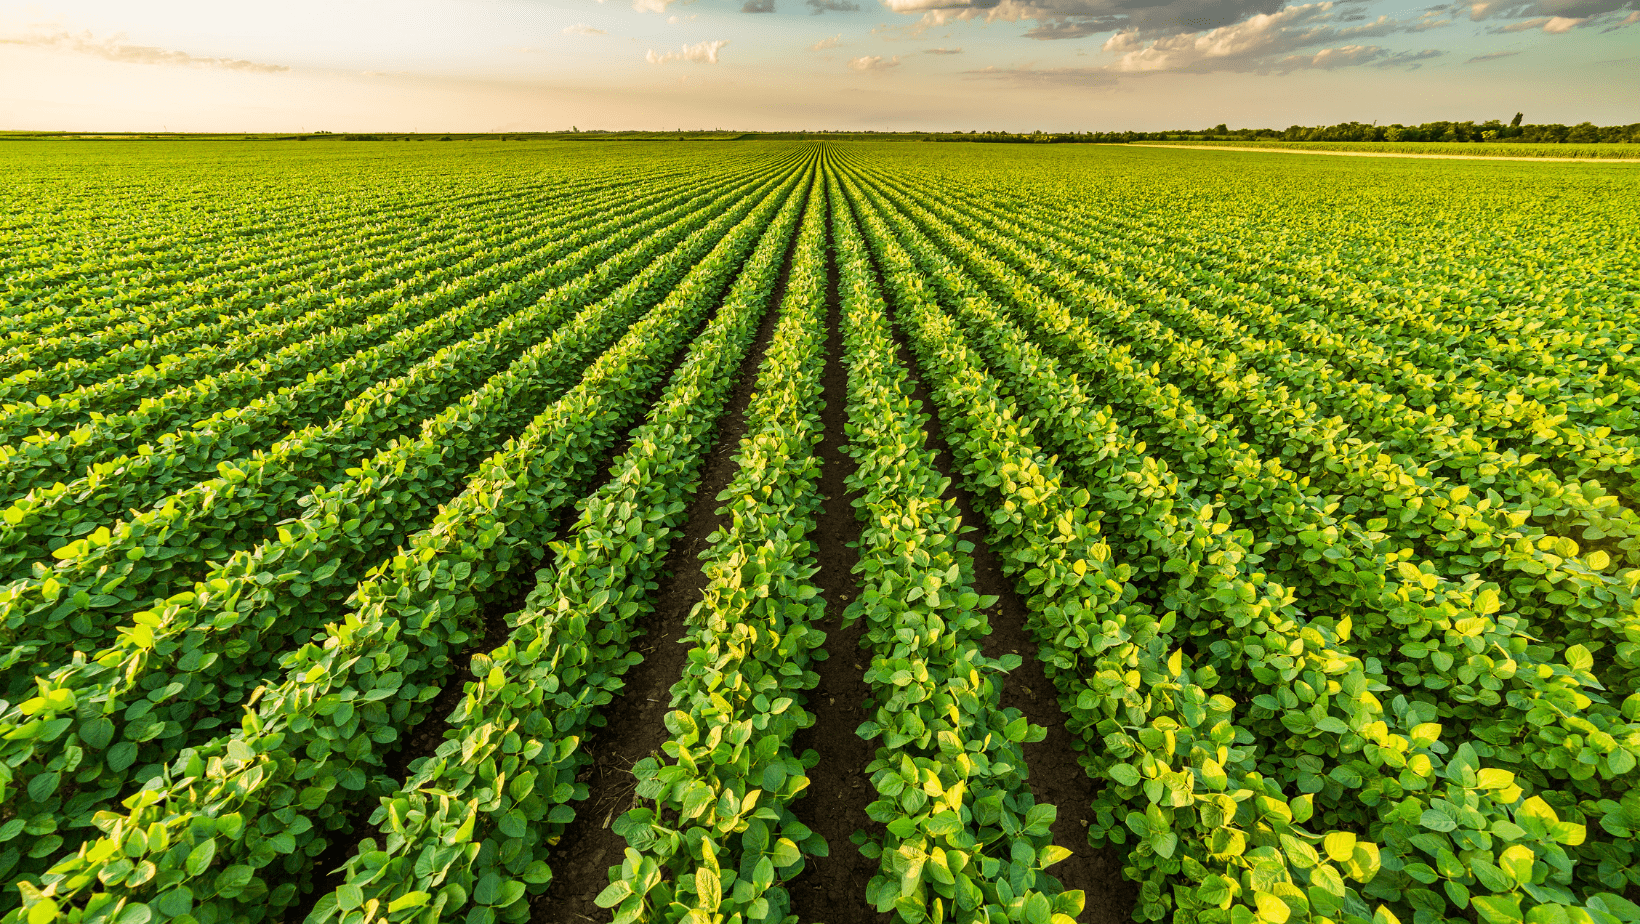 southern soybean field